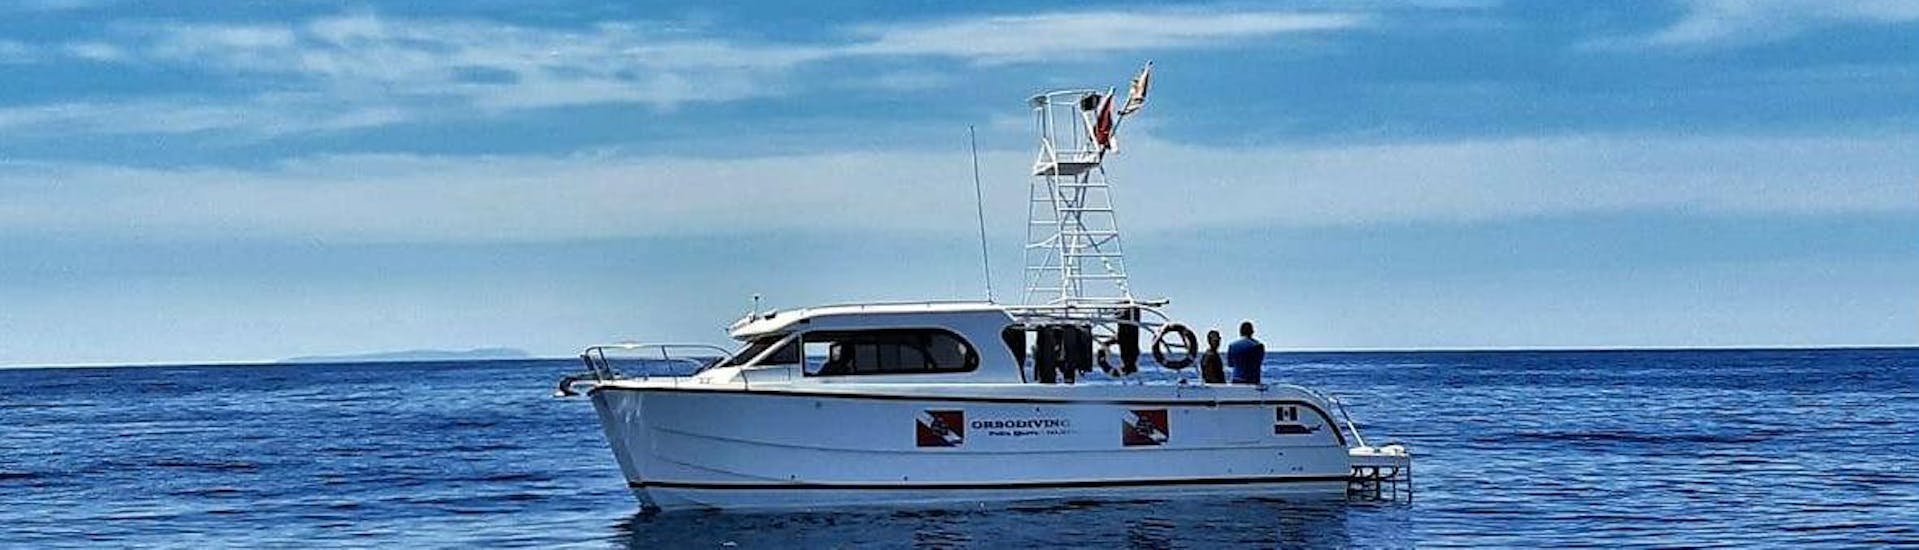 Balade en bateau le long de la Costa Smeralda Snorkeling.